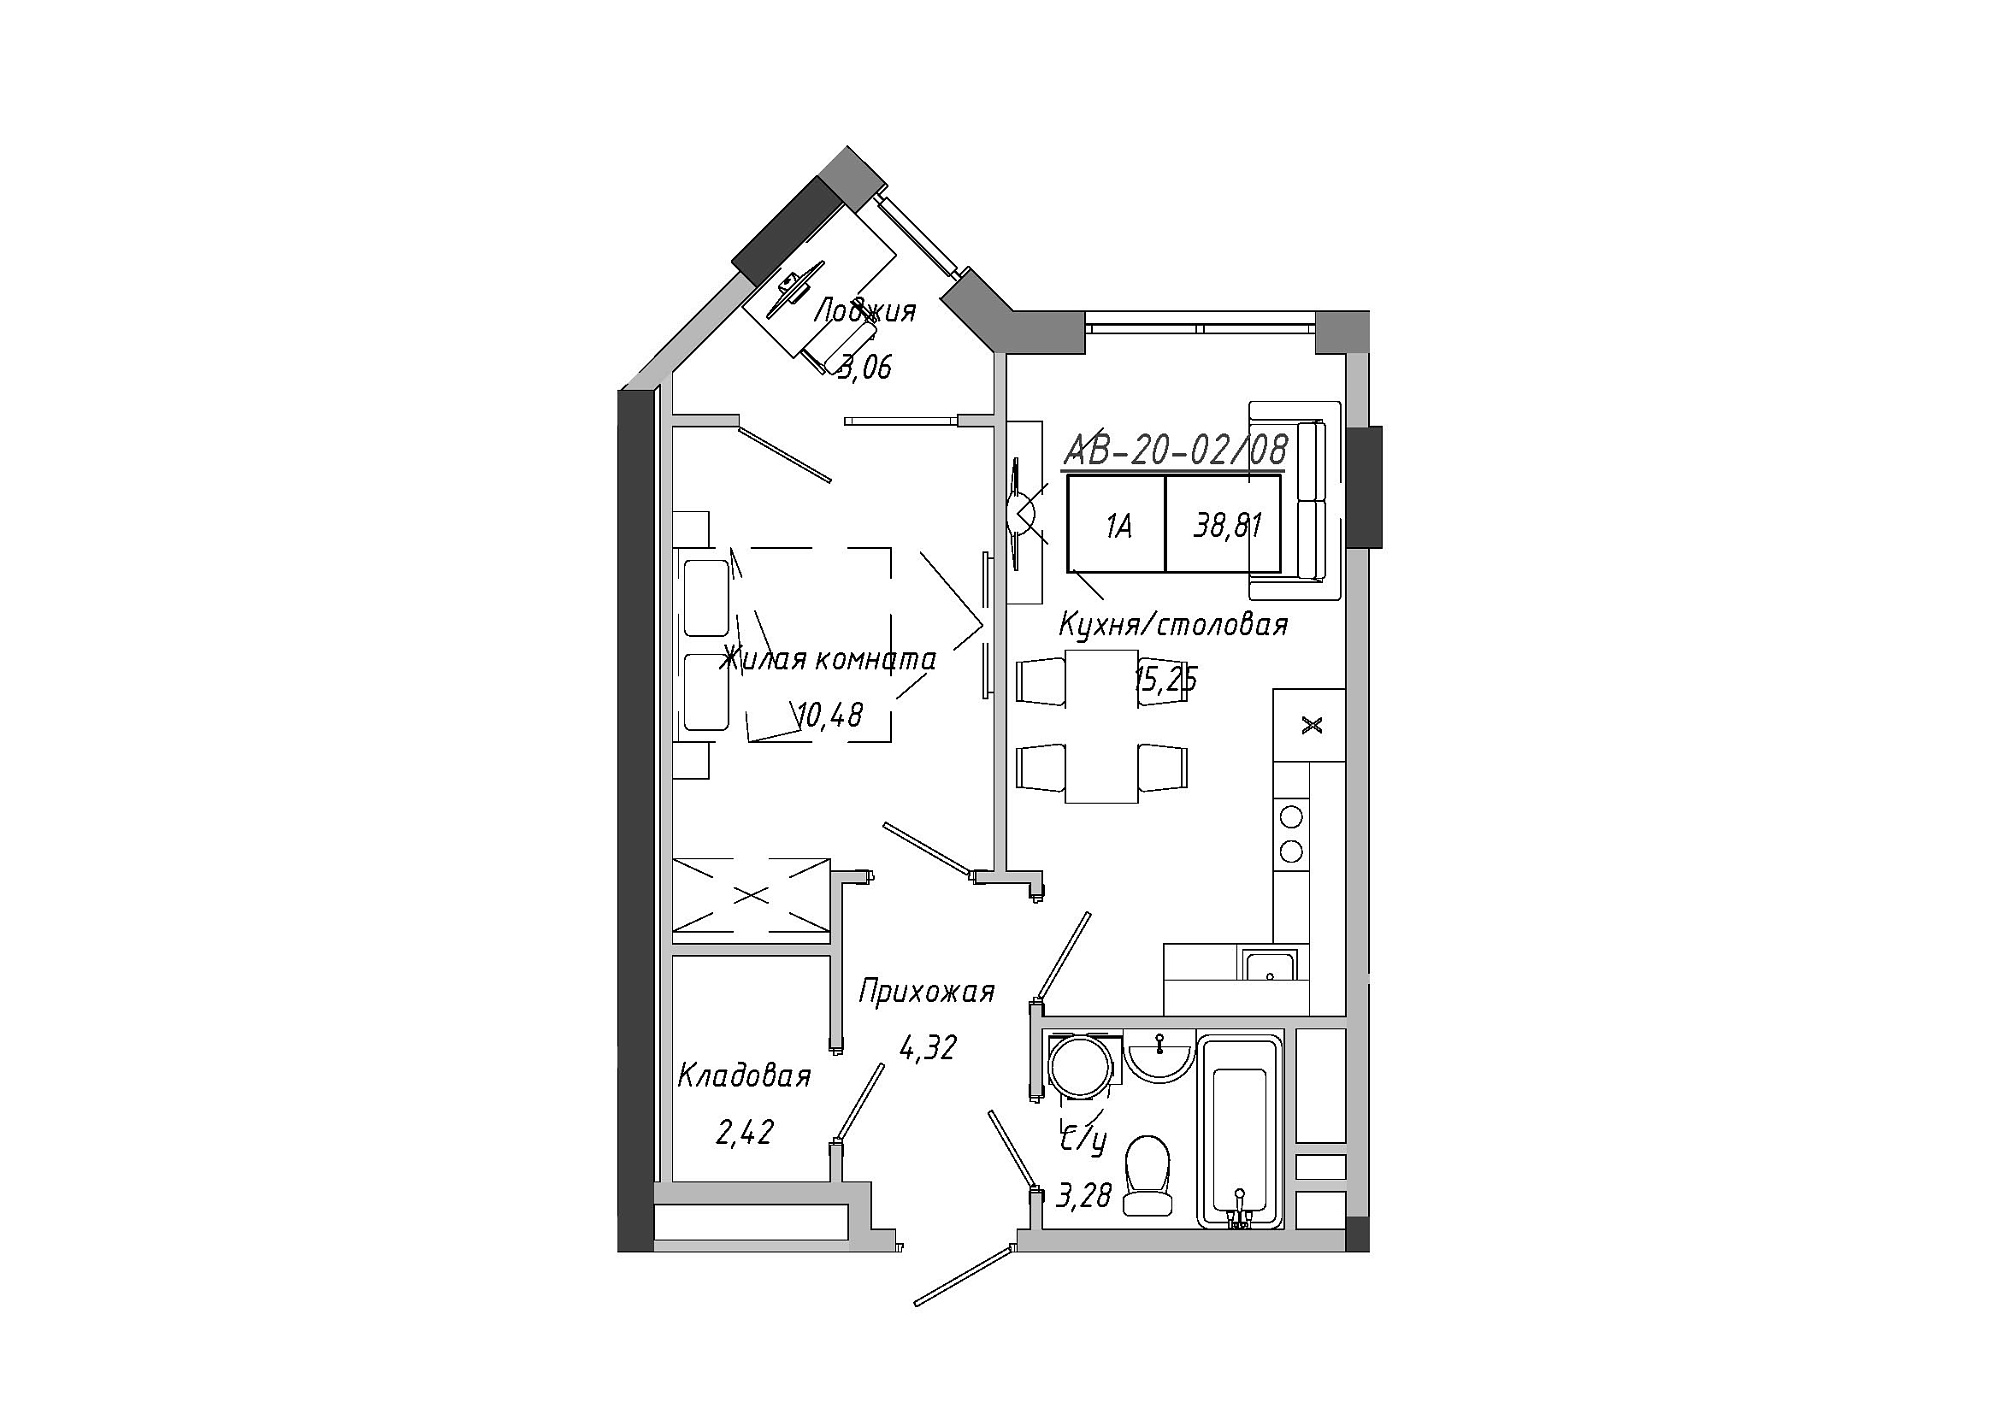 Планировка 1-к квартира площей 38.85м2, AB-20-02/00008.